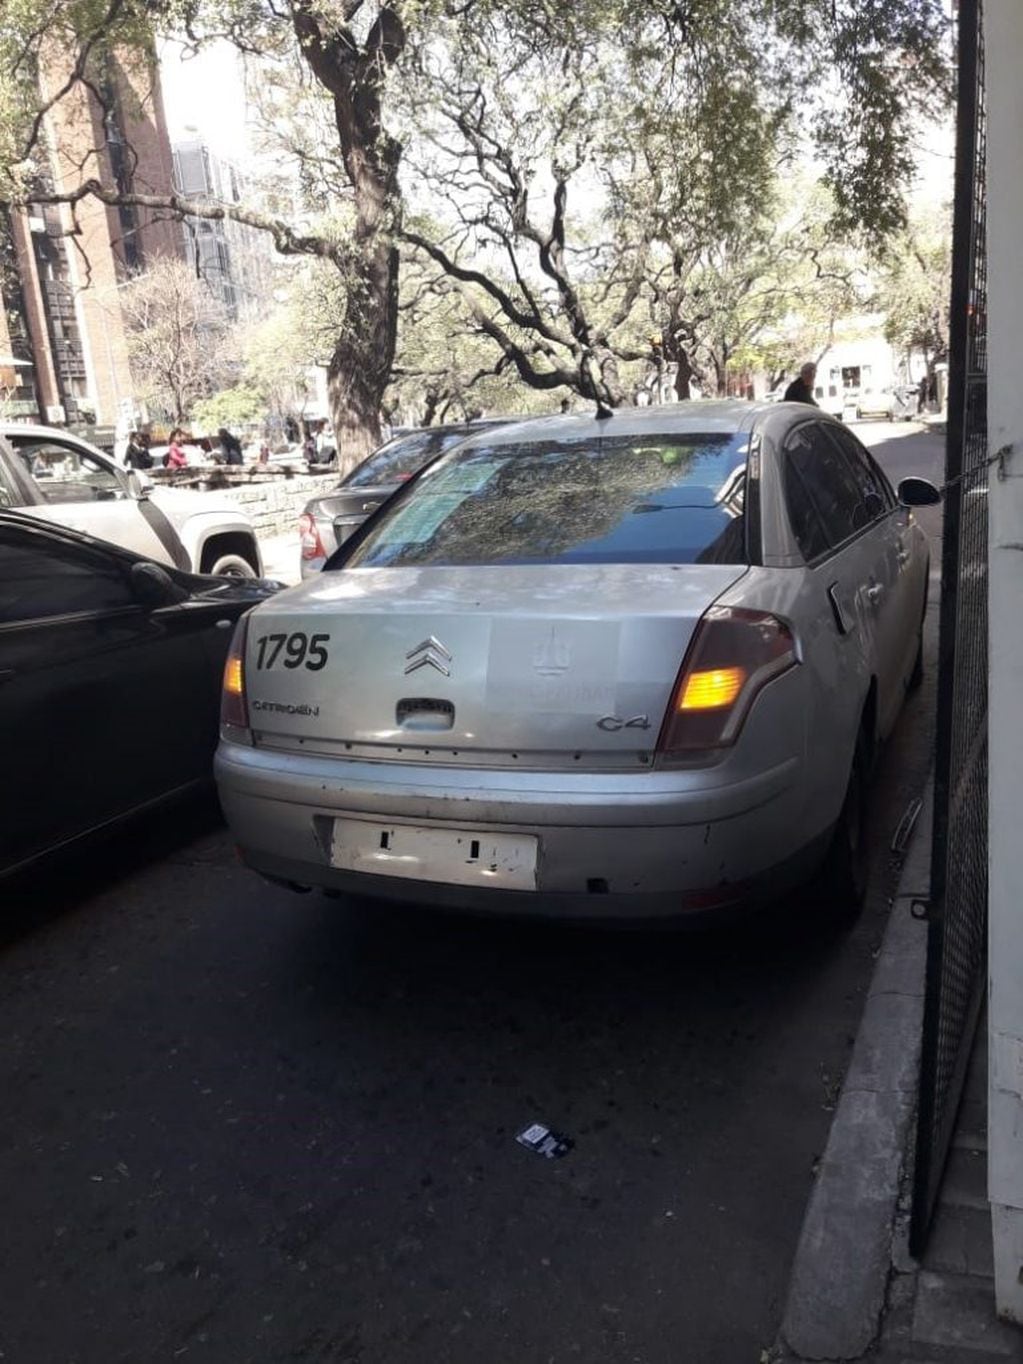 Los vehículos municipales mal estacionados en el centro de Córdoba. (Fotos Paola Pignata)